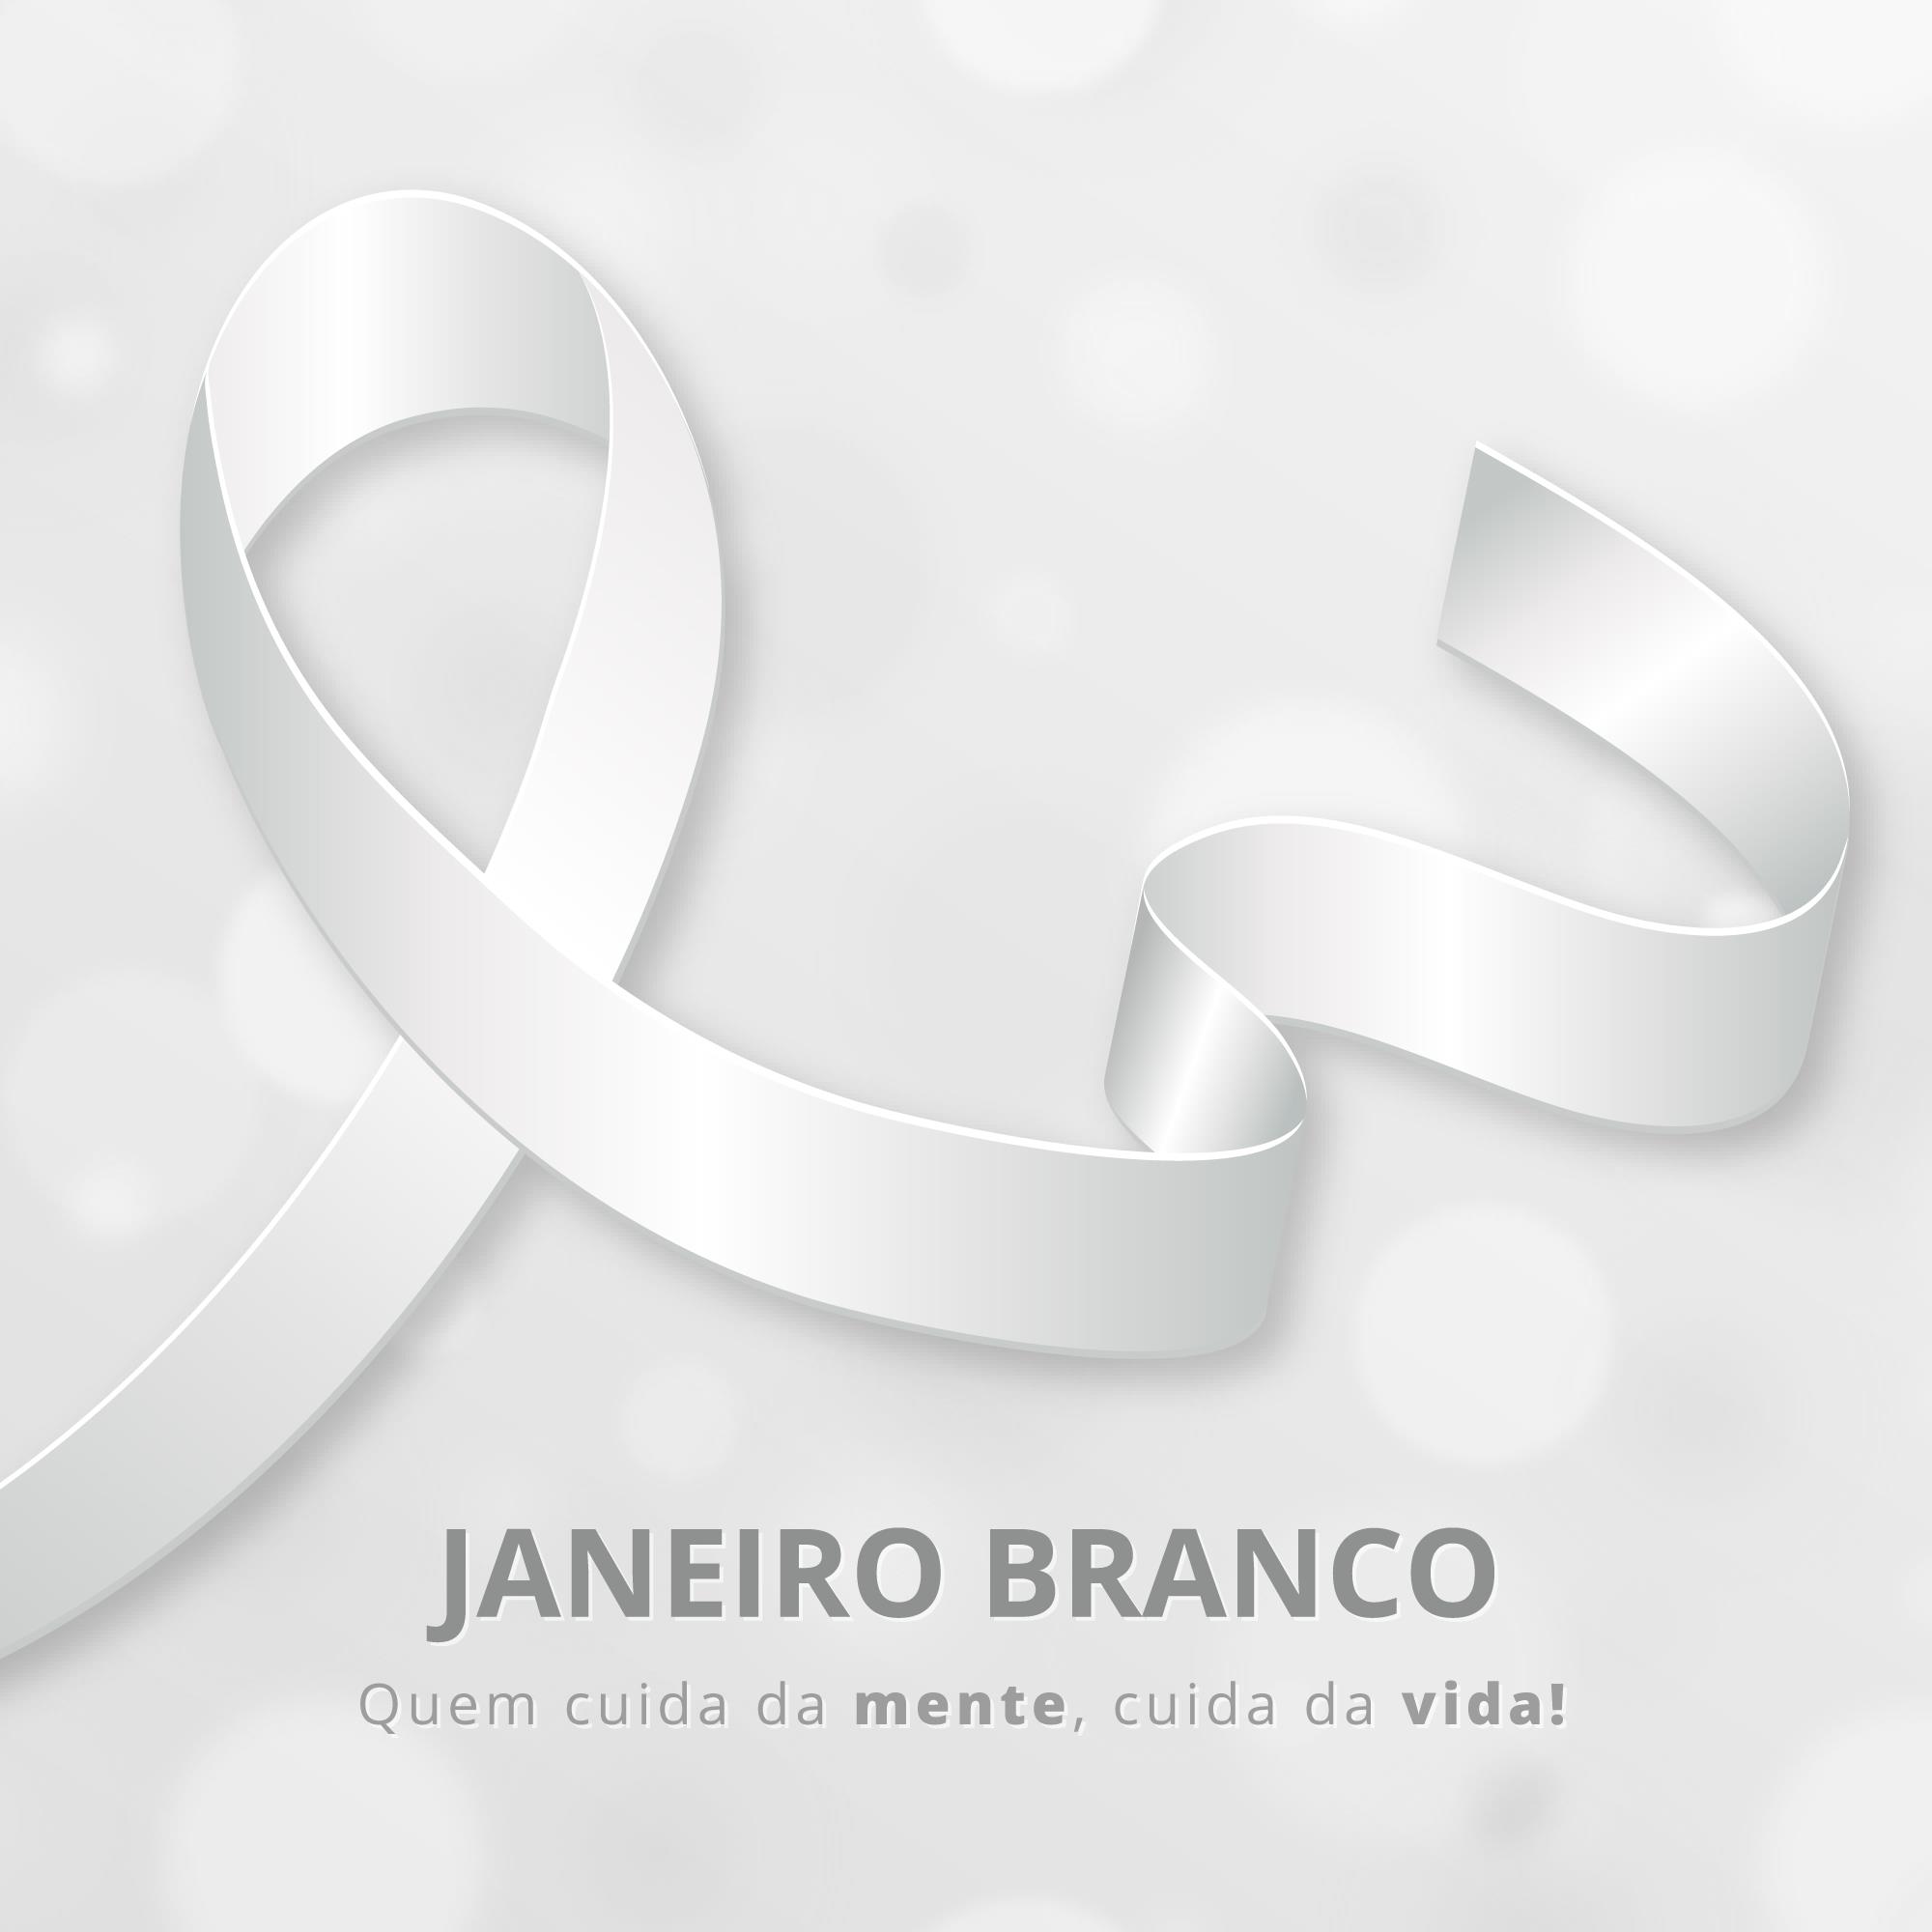 Janeiro Branco, campanha de conscientização sobre Saúde Mental